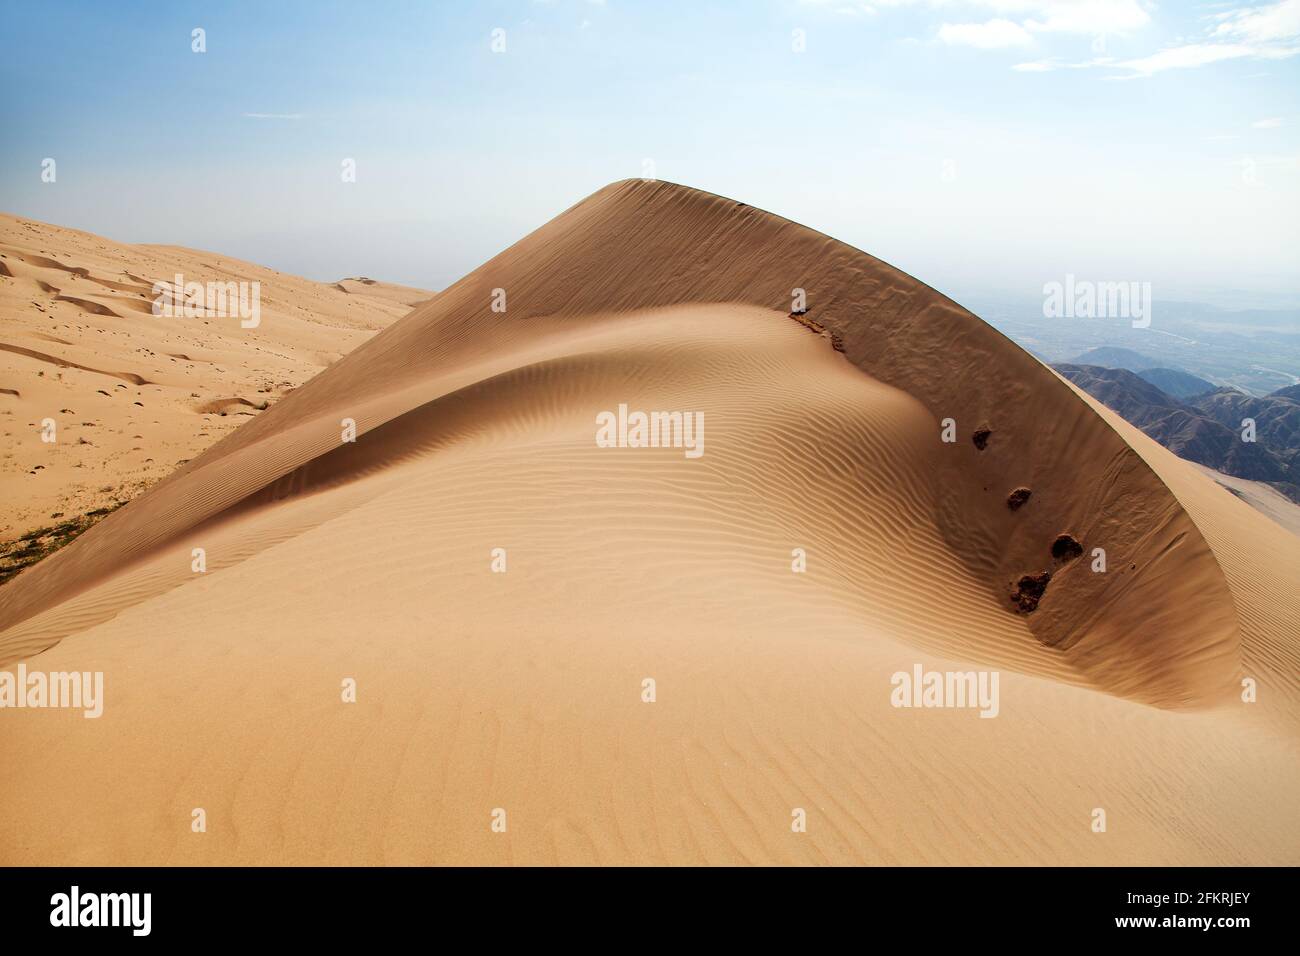 La dune de sable Cerro Blanco, les plus hautes dunes du monde, située près de la ville de Nasca ou Nazca au Pérou Banque D'Images